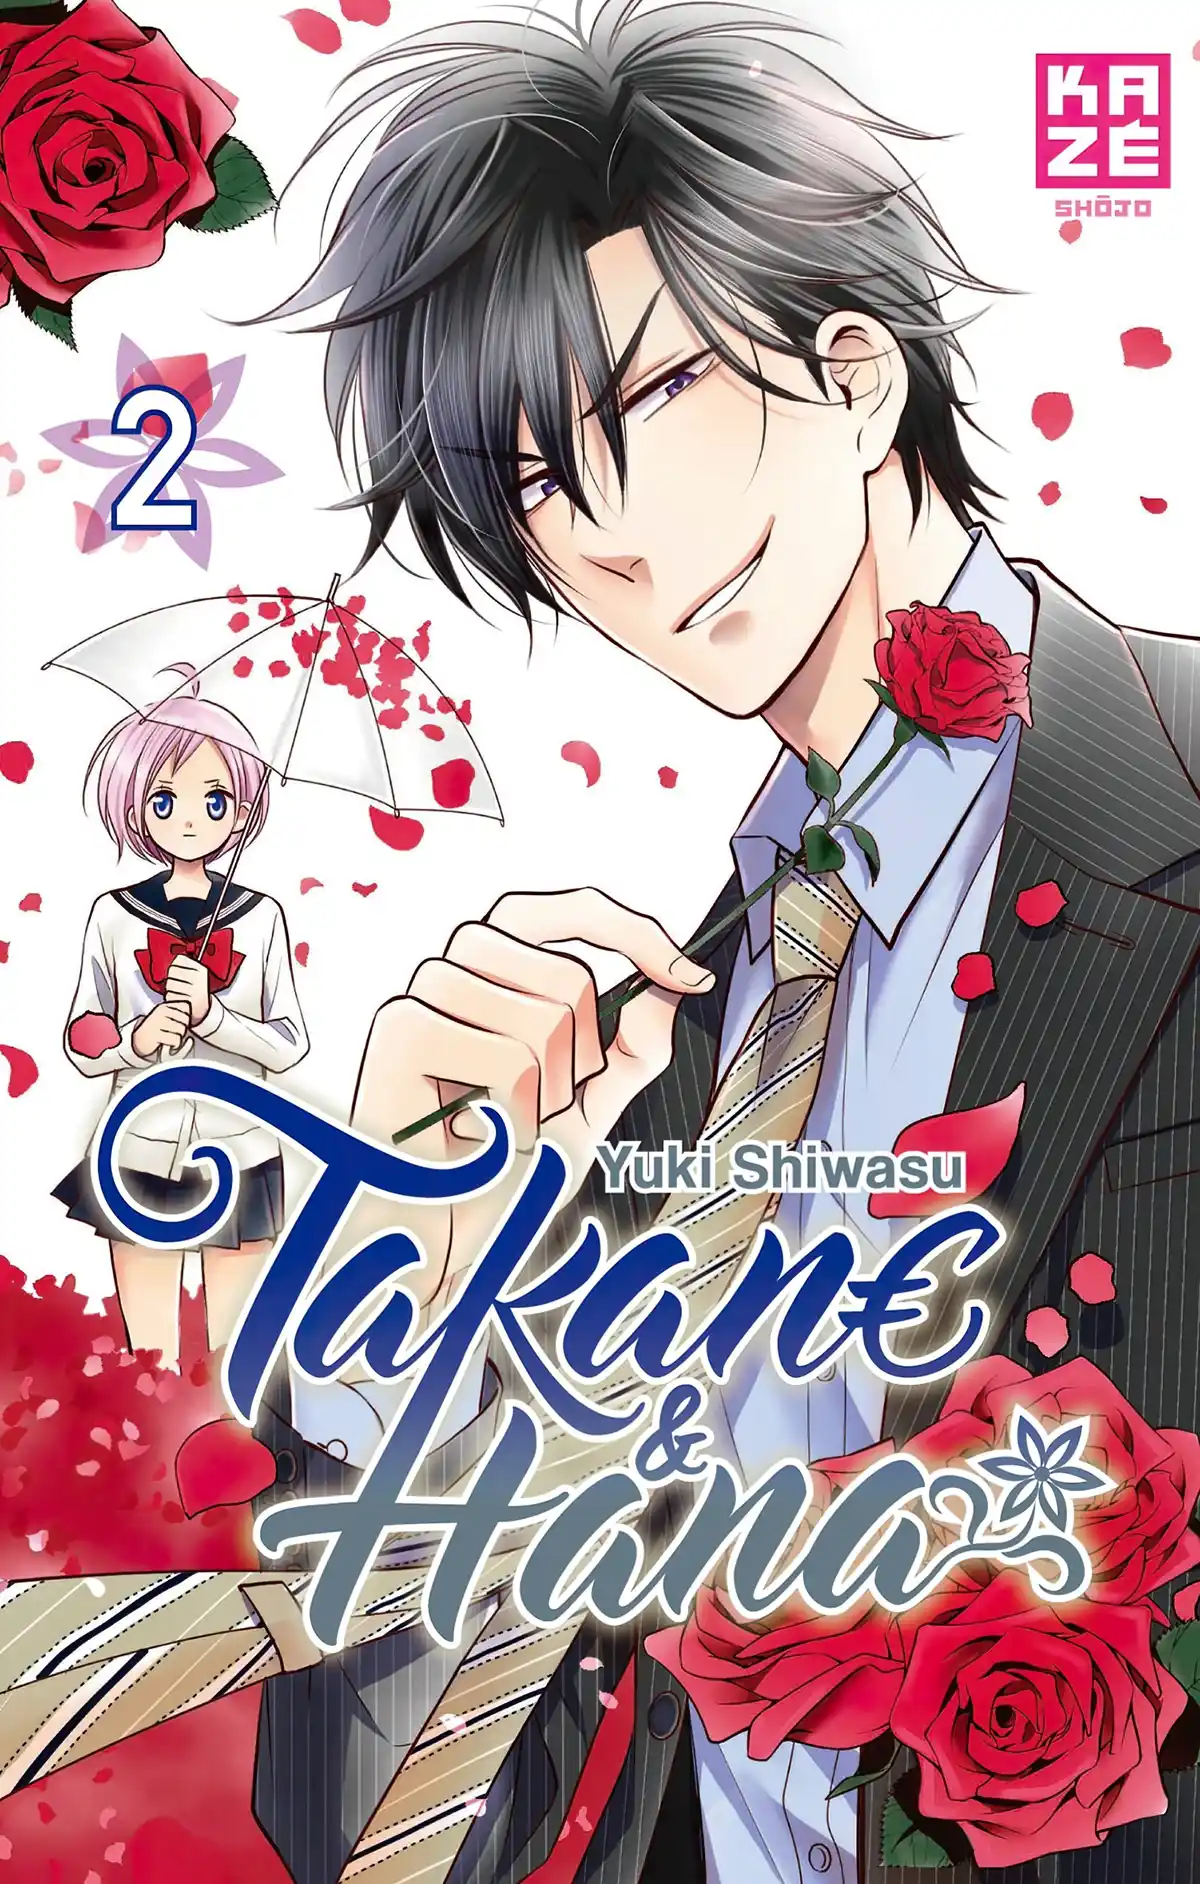 Takane & Hana Volume 2 page 1